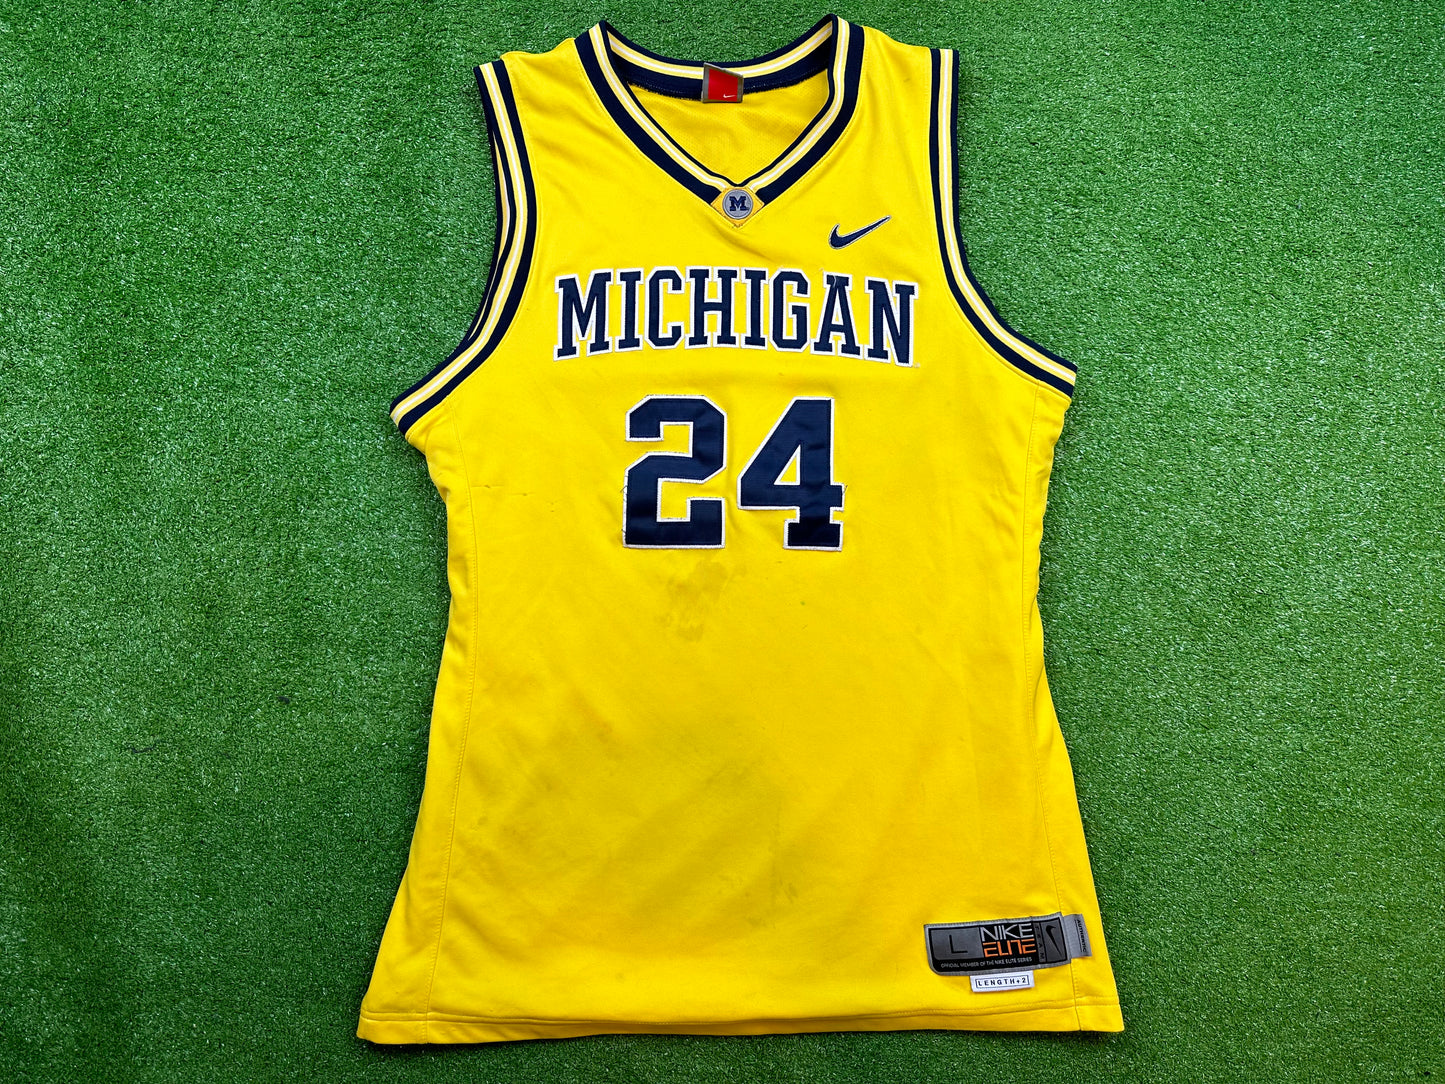 Michigan #24 Basketball Jersey